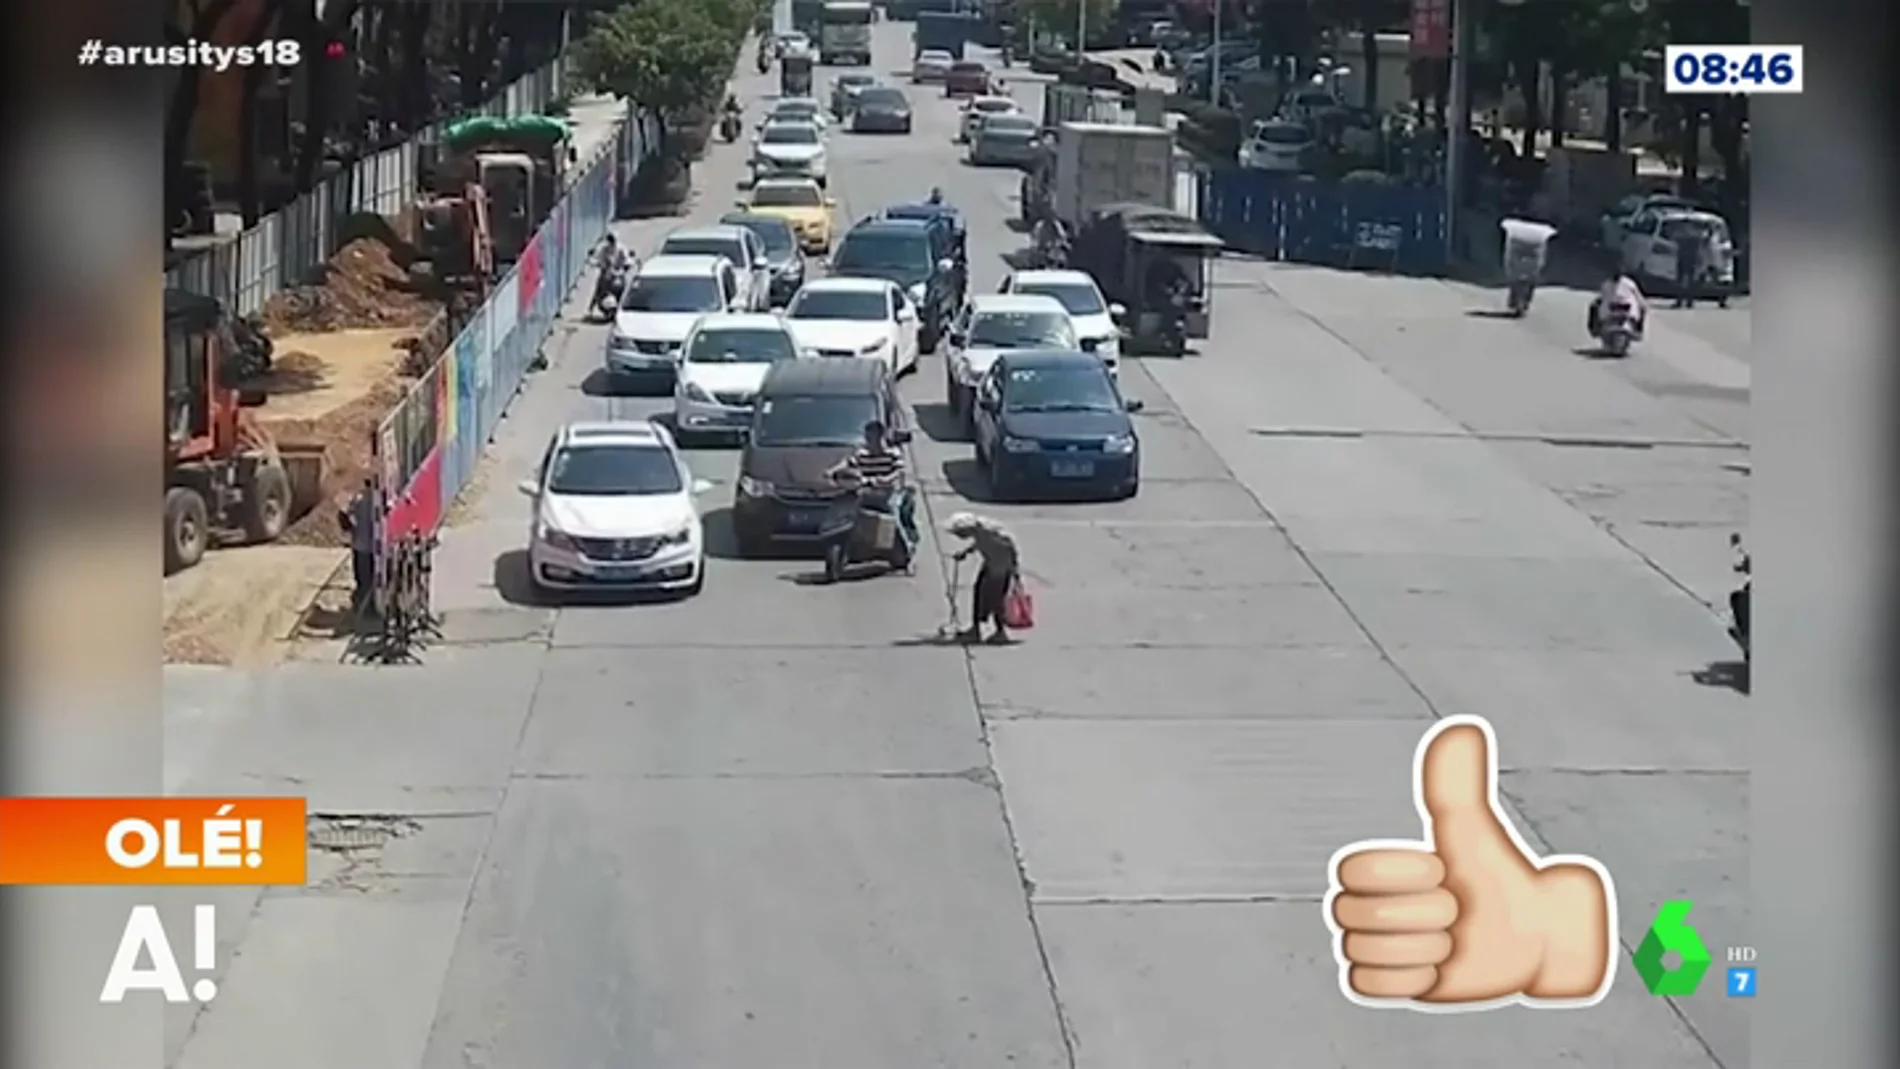 Un motorista para el tráfico para que una señora pueda cruzar la calle